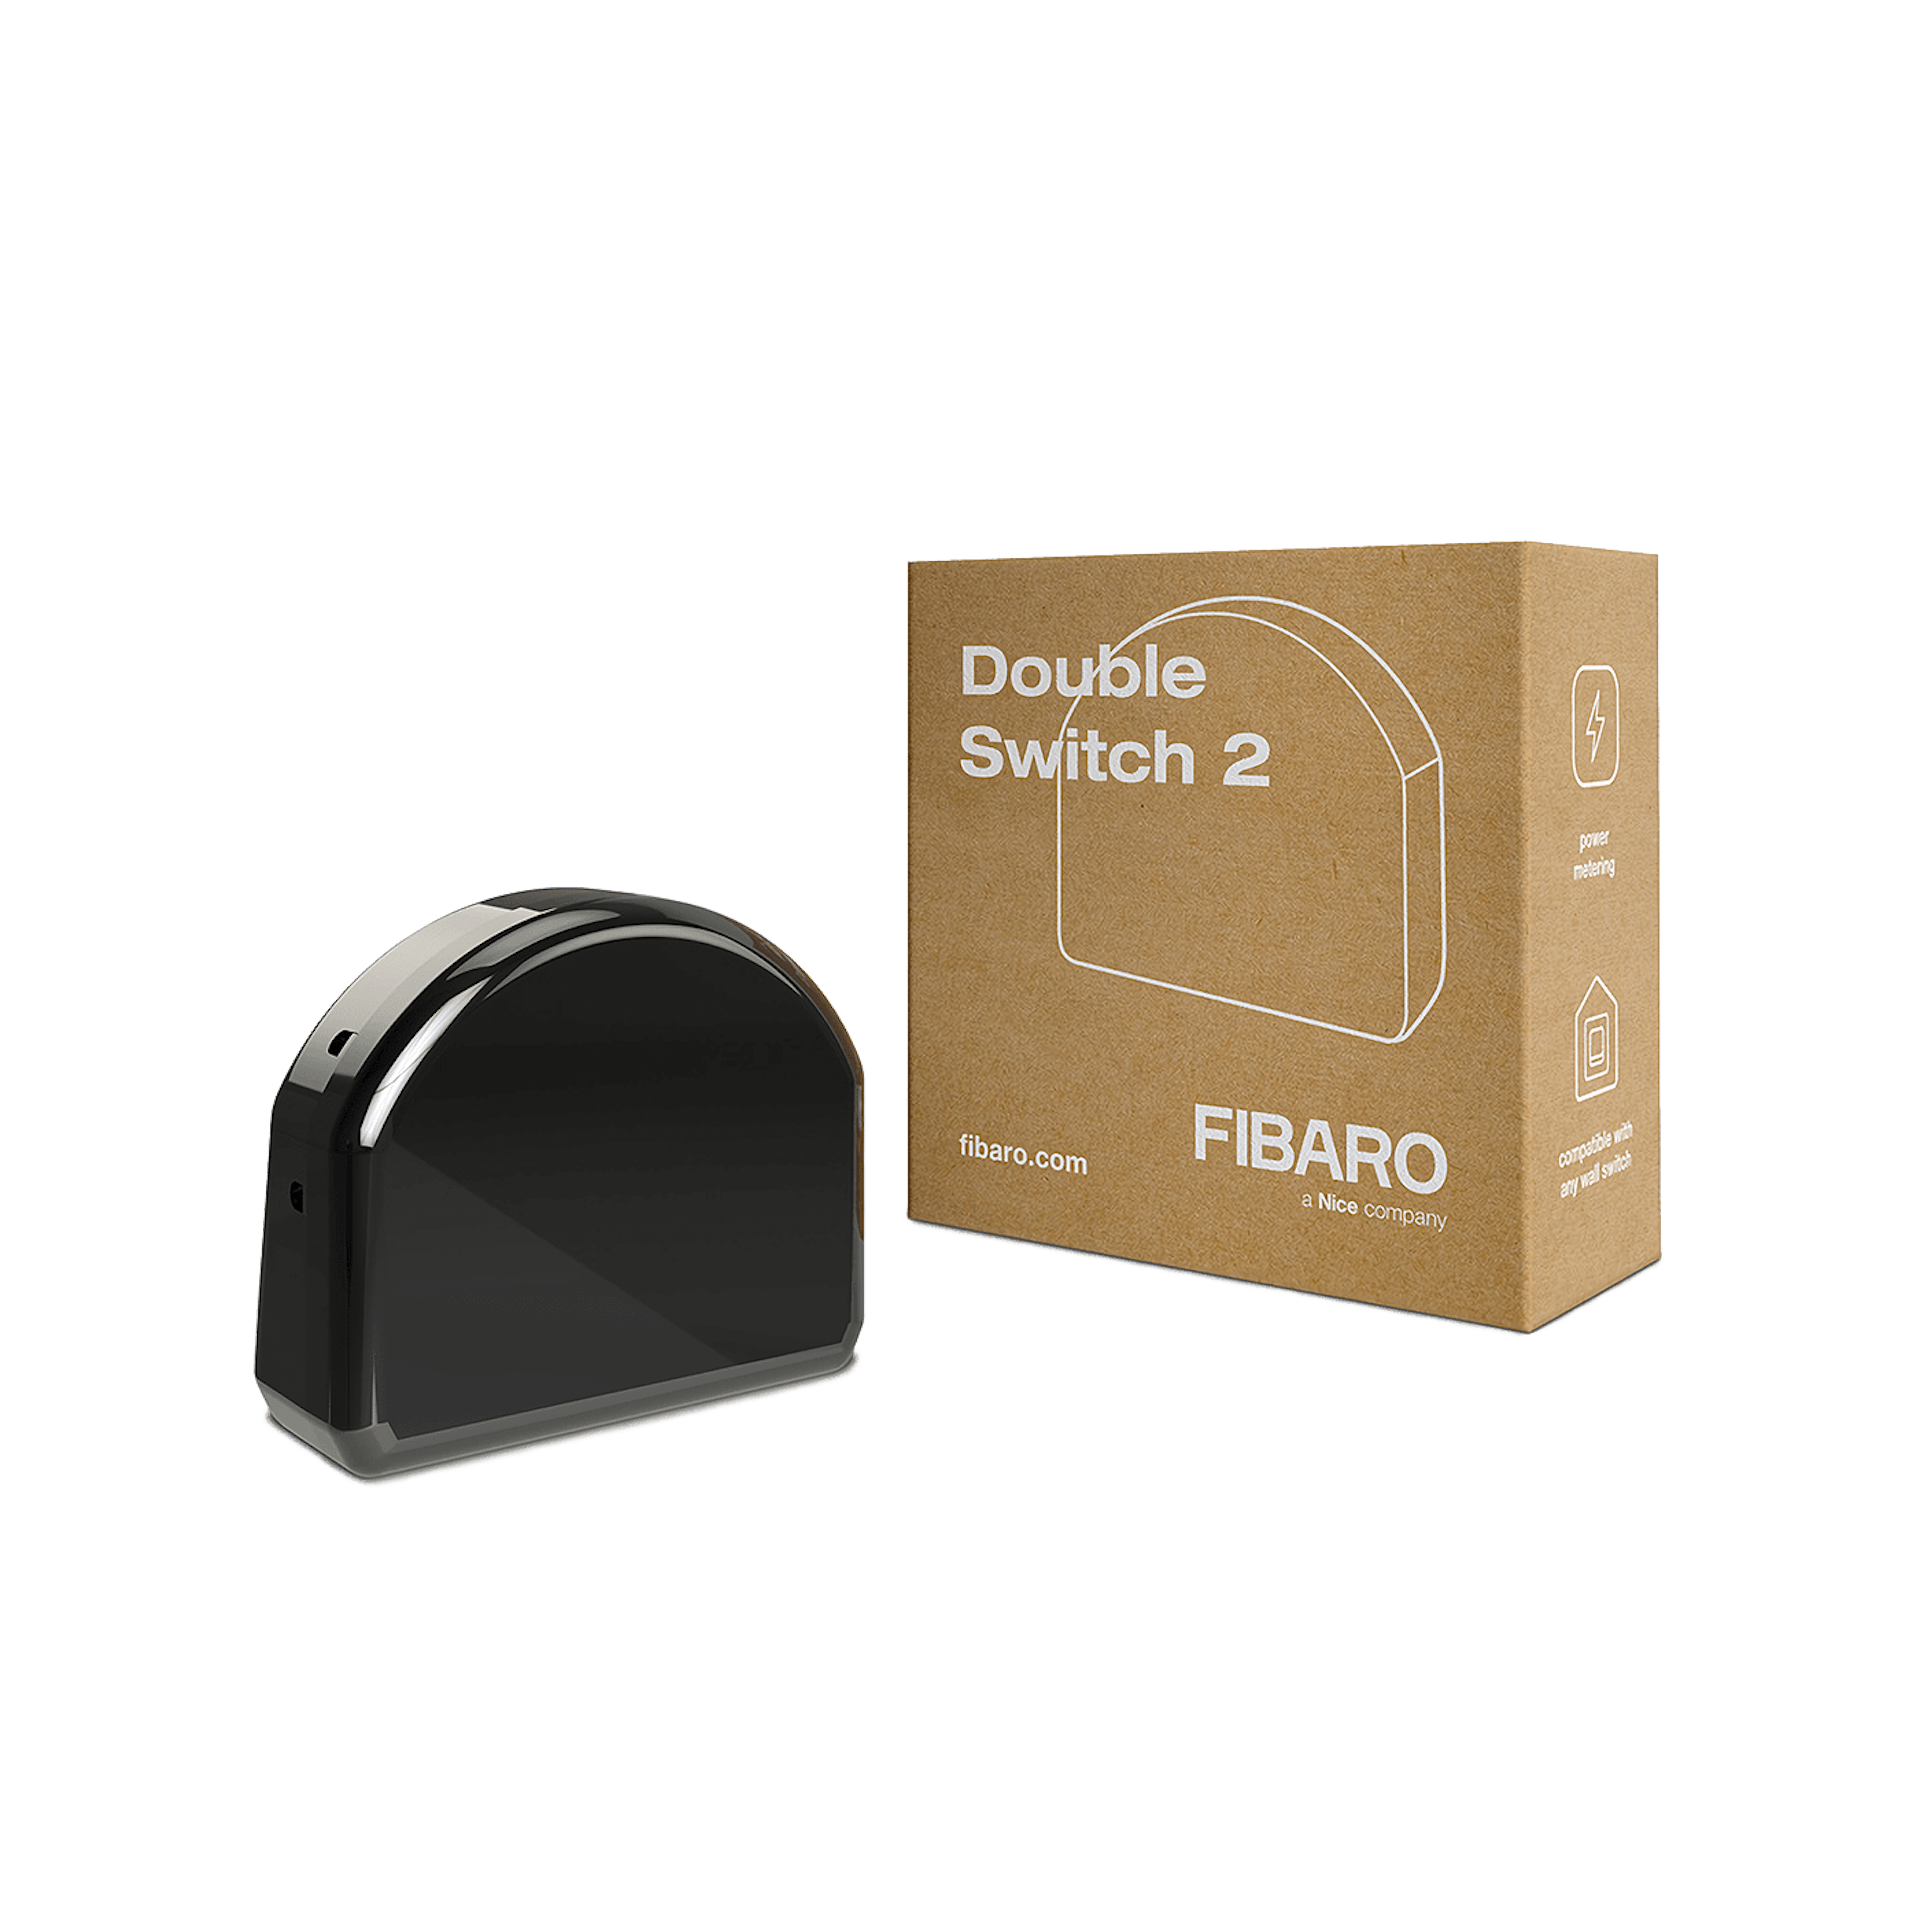 Fibaro Double Switch 2 - Image 2